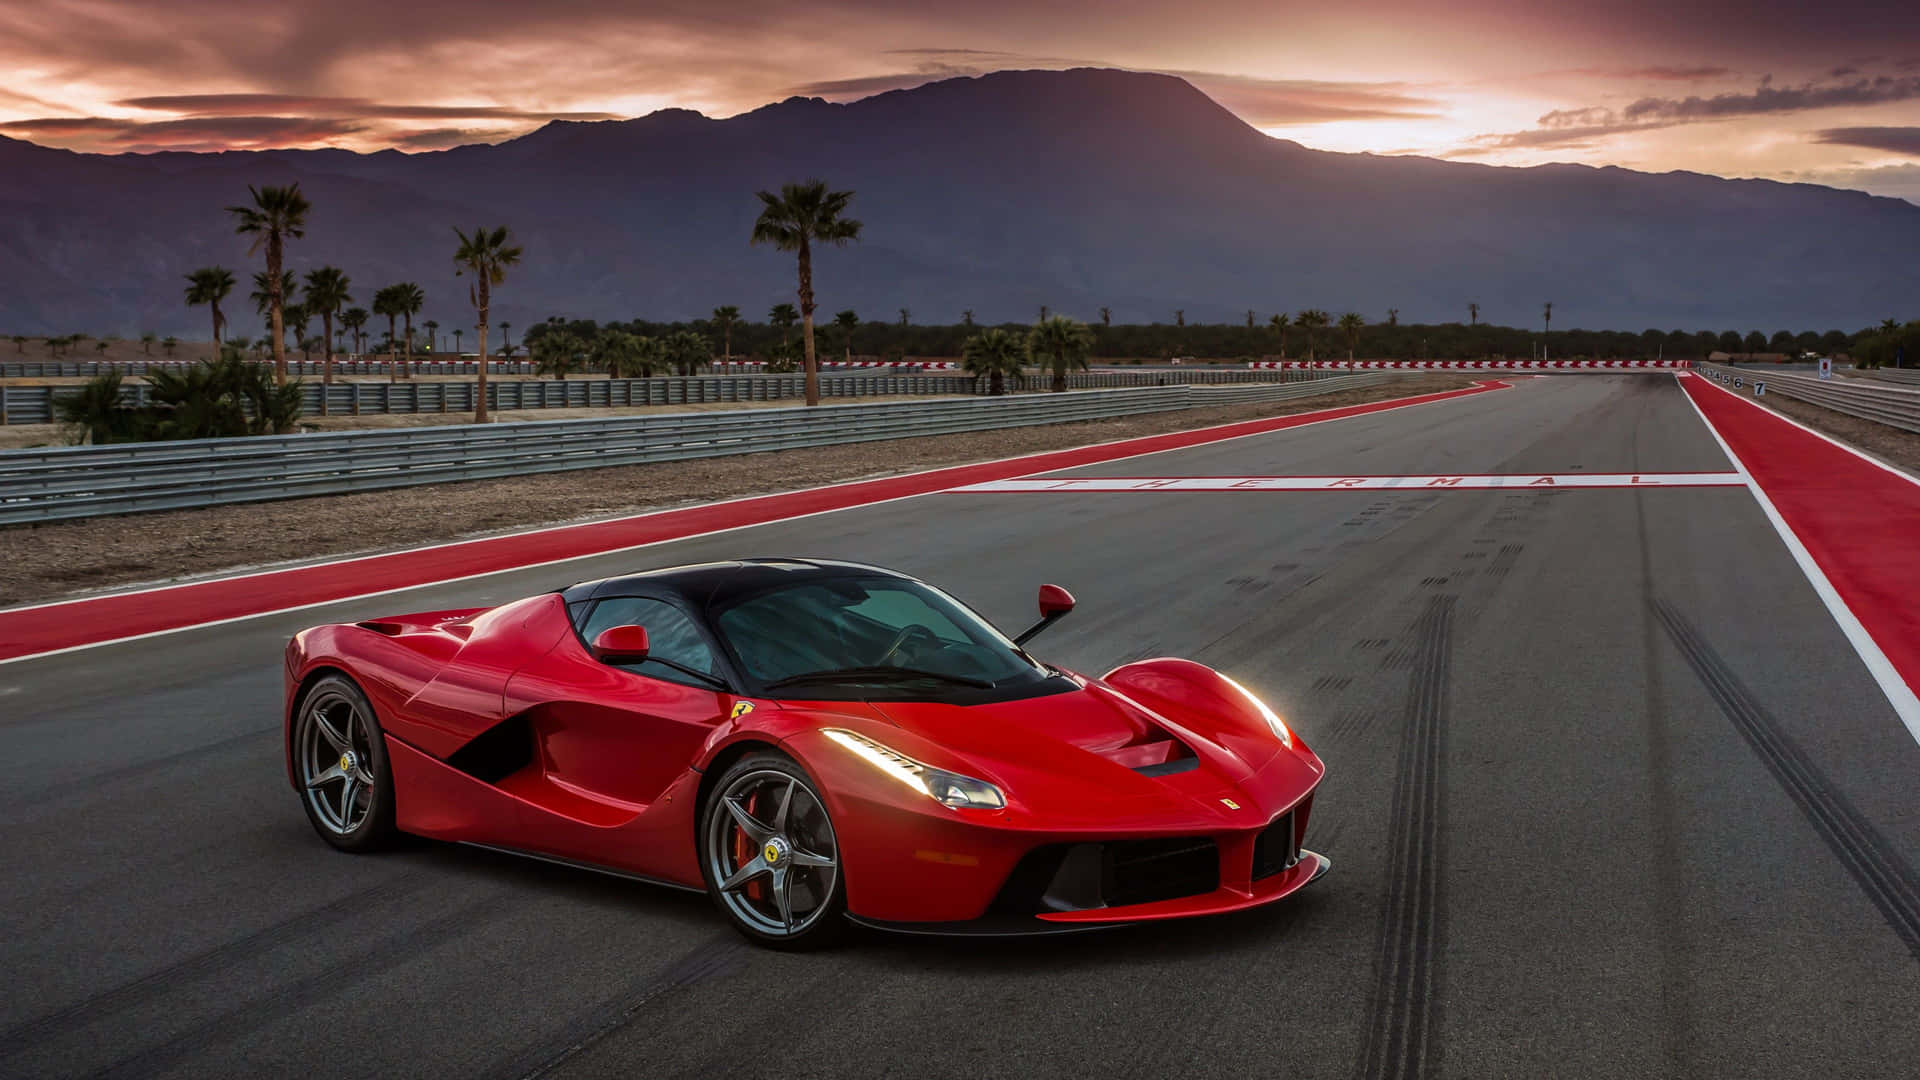 Race Like No Other - Enjoy 4K Ferrari